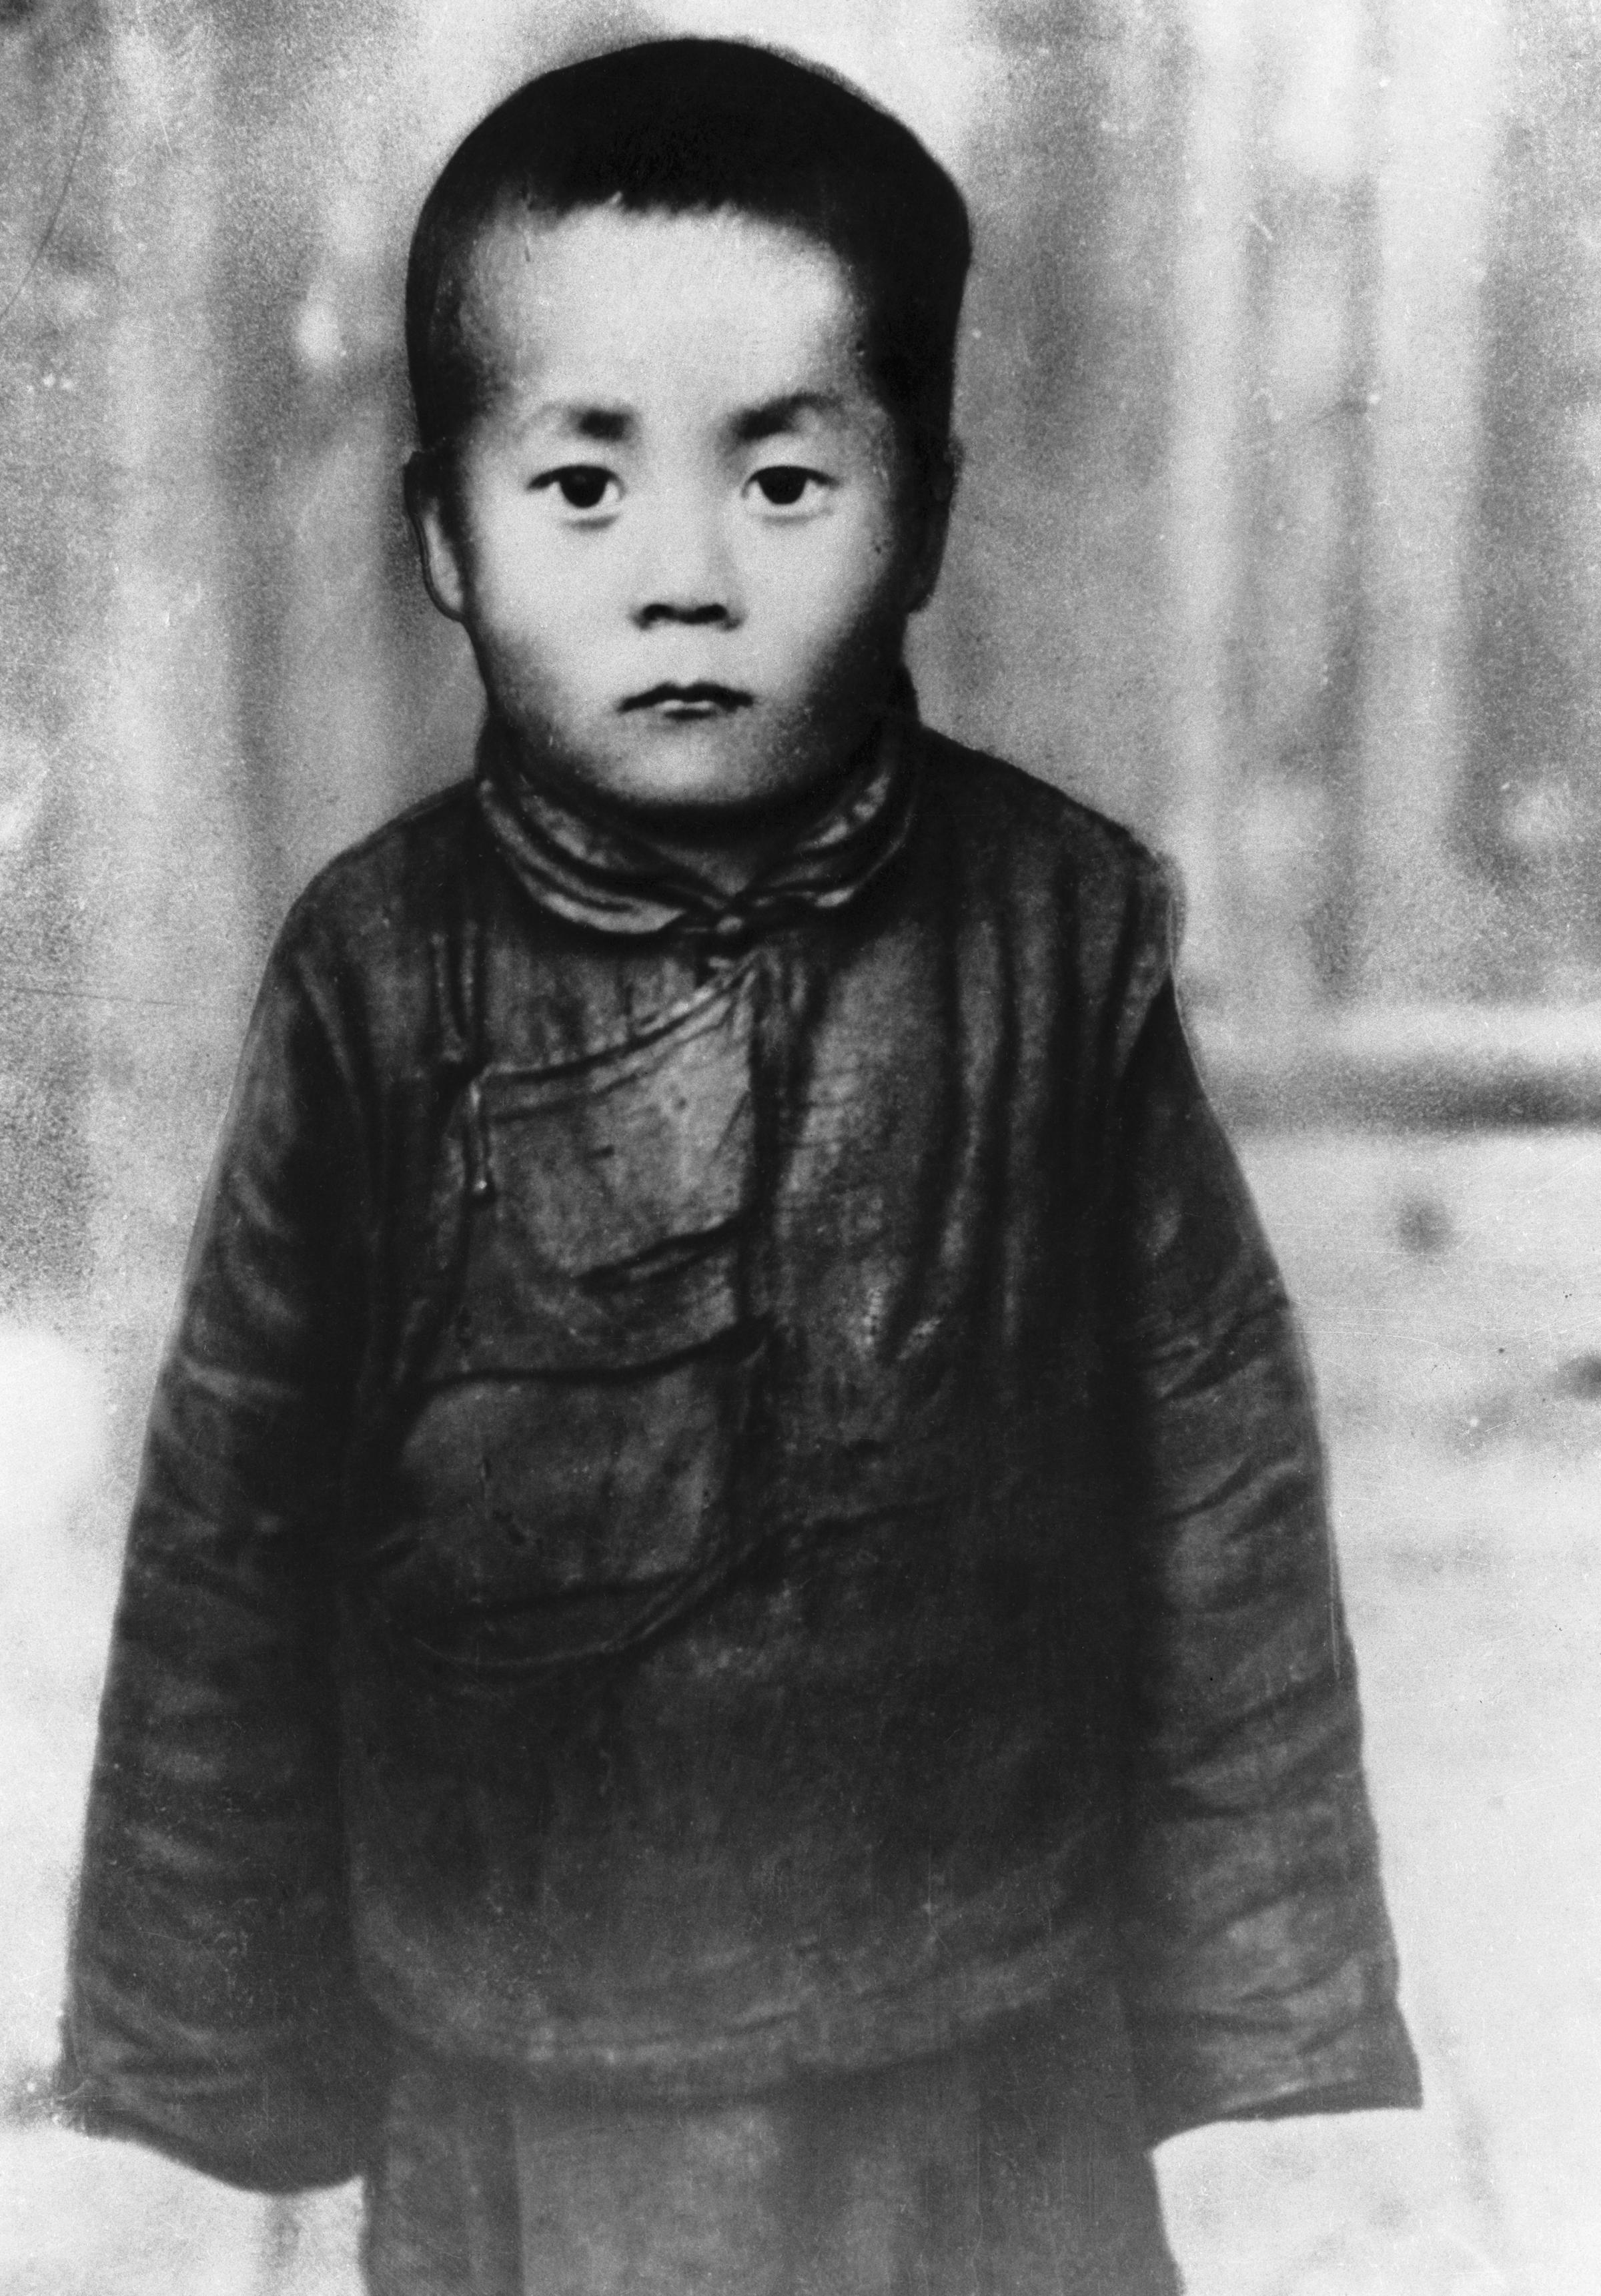 dalai lama young 1937